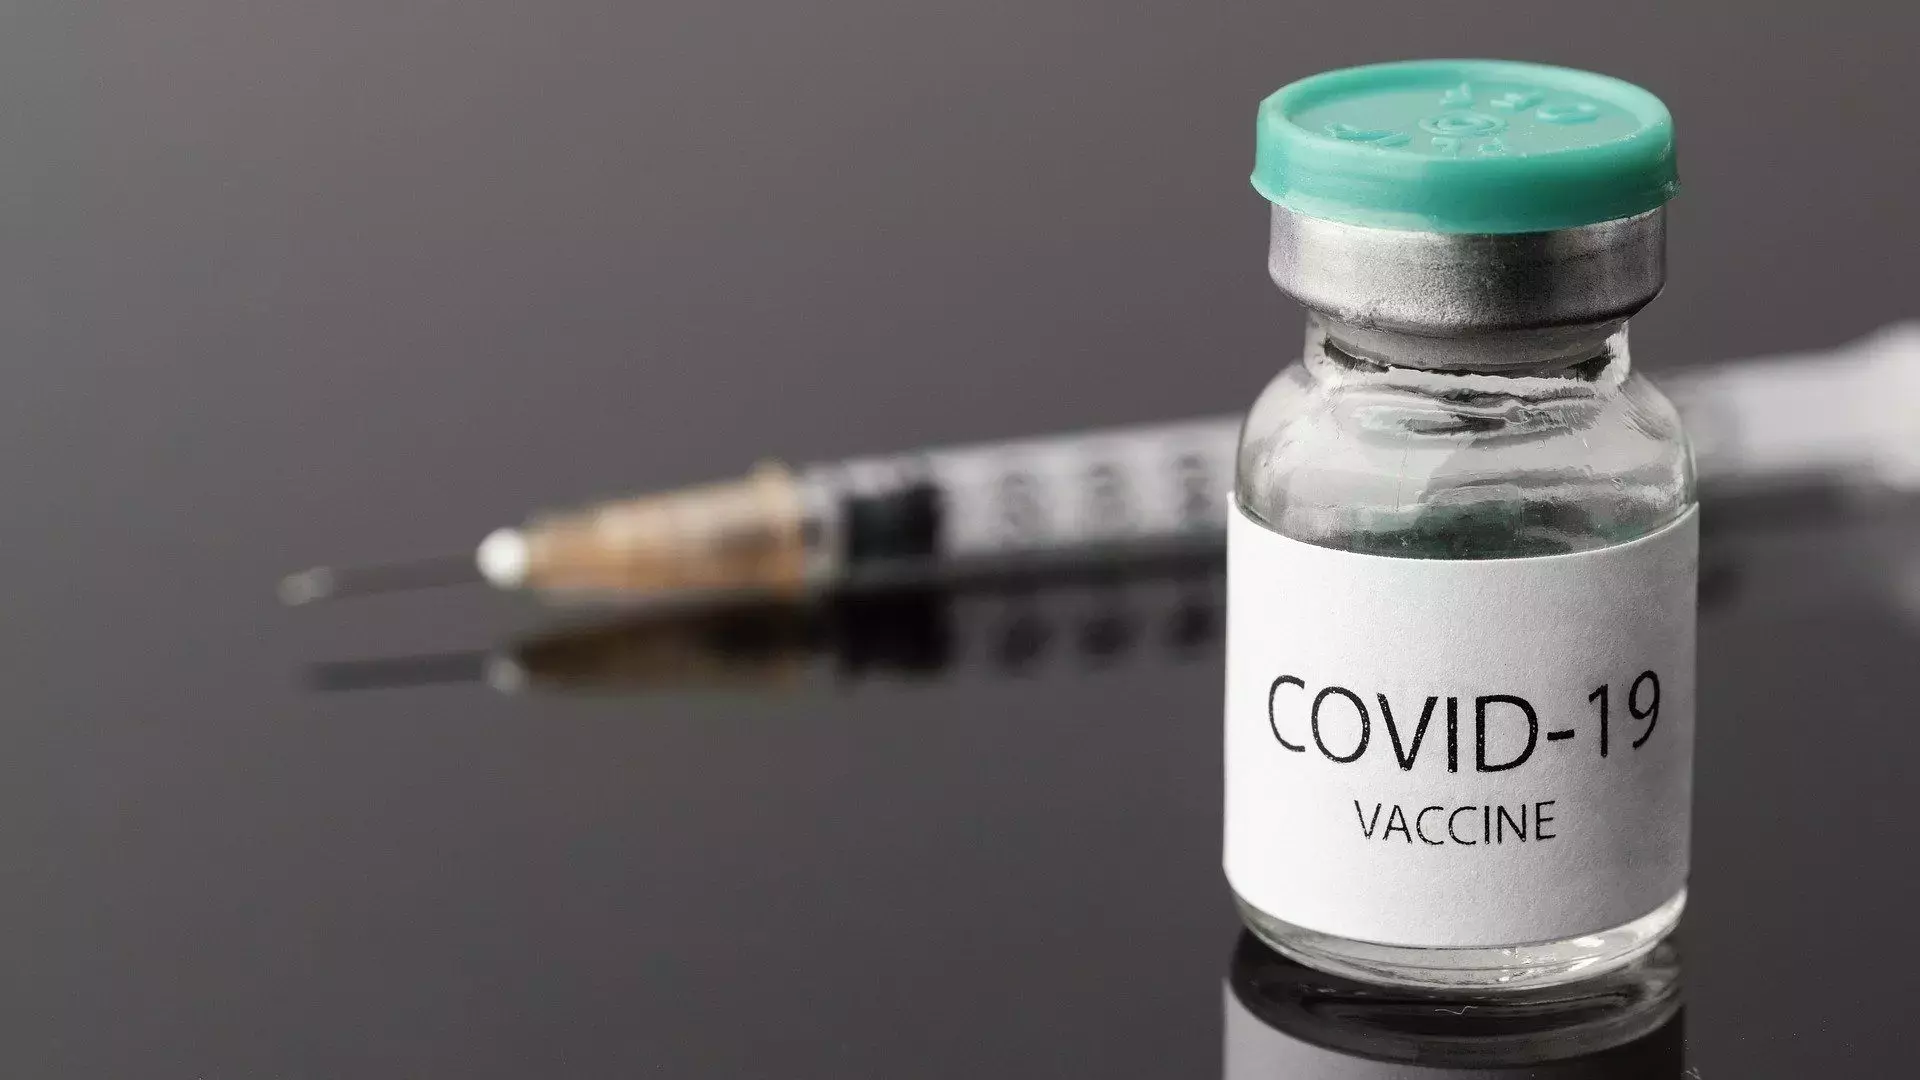 वैक्सीन की दो डोज ने कोविड-19 संक्रमण से होने वाली मौतों को 95 प्रतिशत तक कम किया: आईसीएमआर